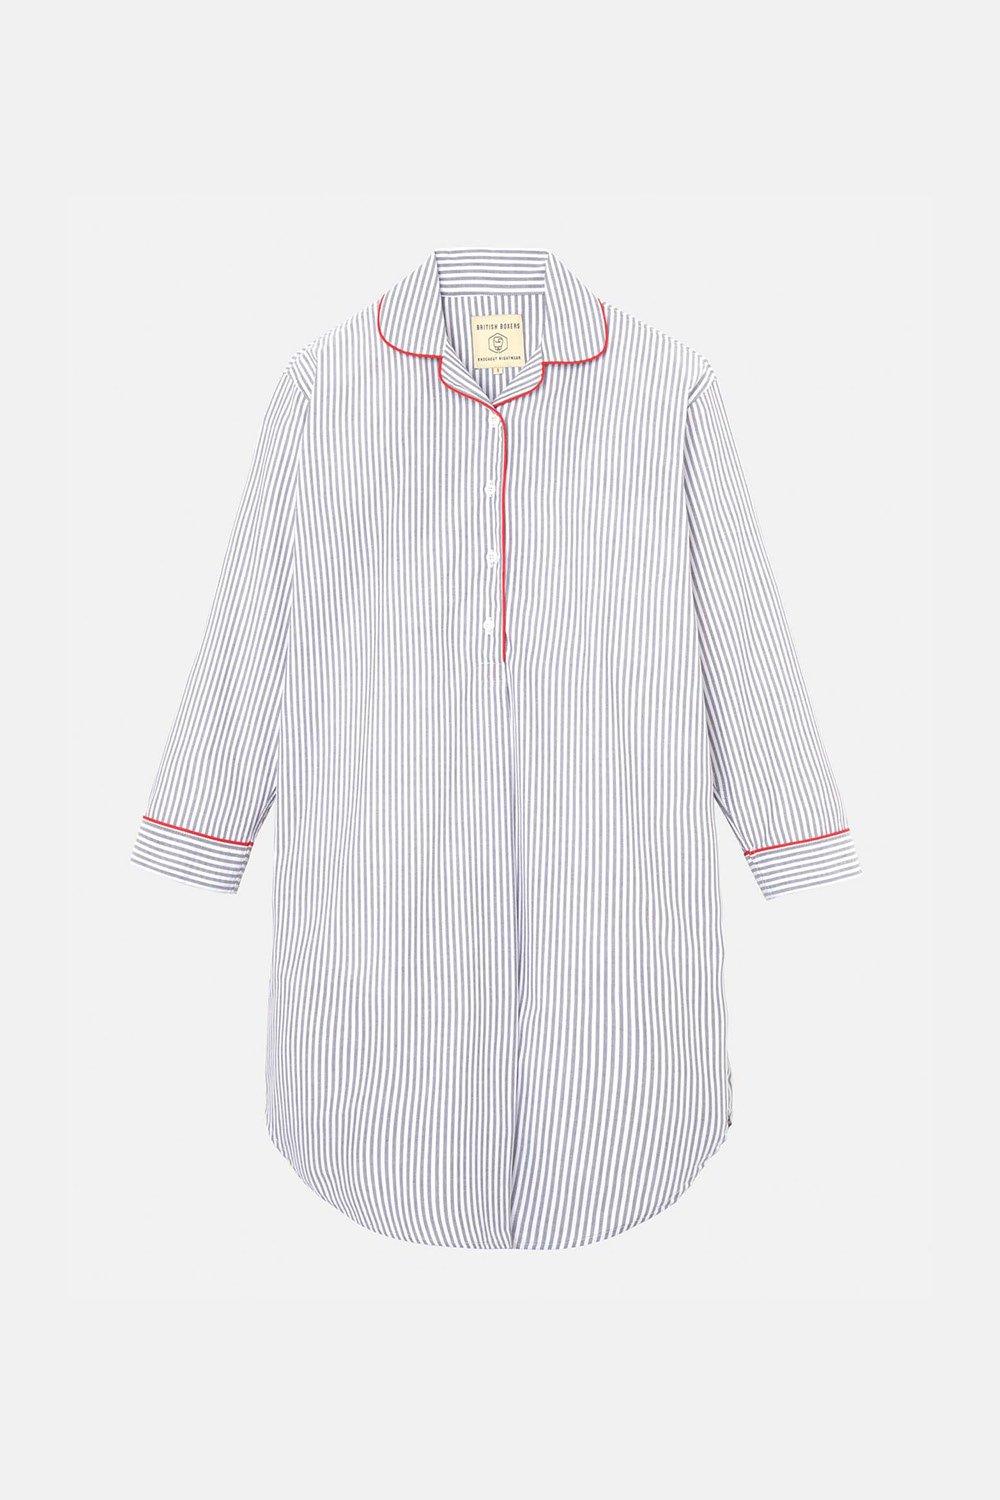 Sussex Stripe Crisp Cotton Nightshirt